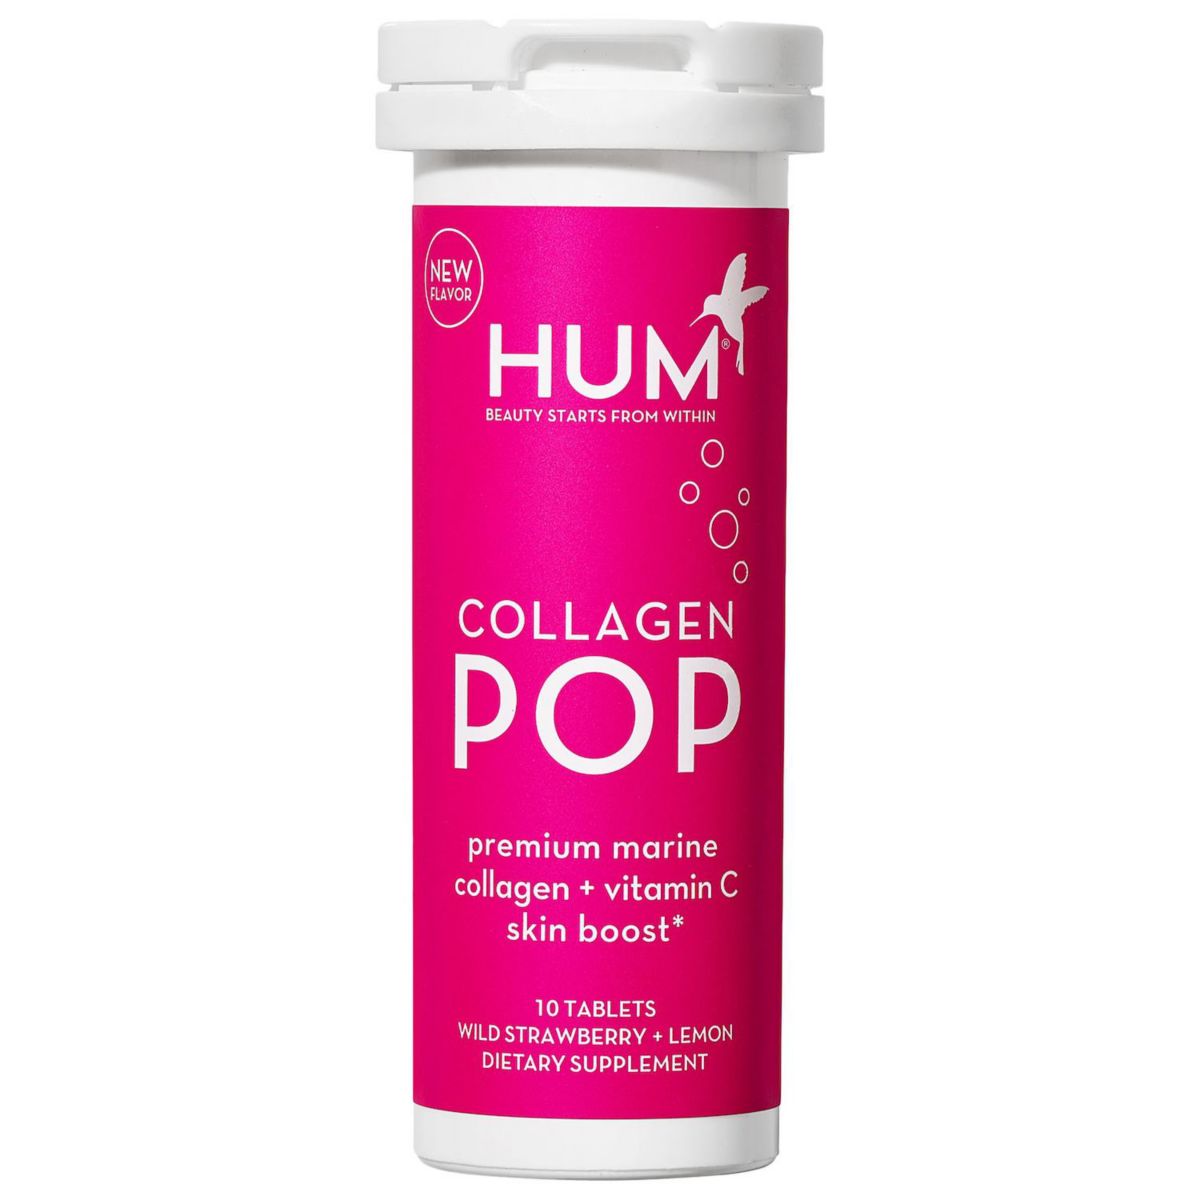 Collagen marine premium. Коллаген шипучий. Premium Marine Collagen+Vit.c. Premium Marine Collagen Vitamin c. Vitamin Boost.